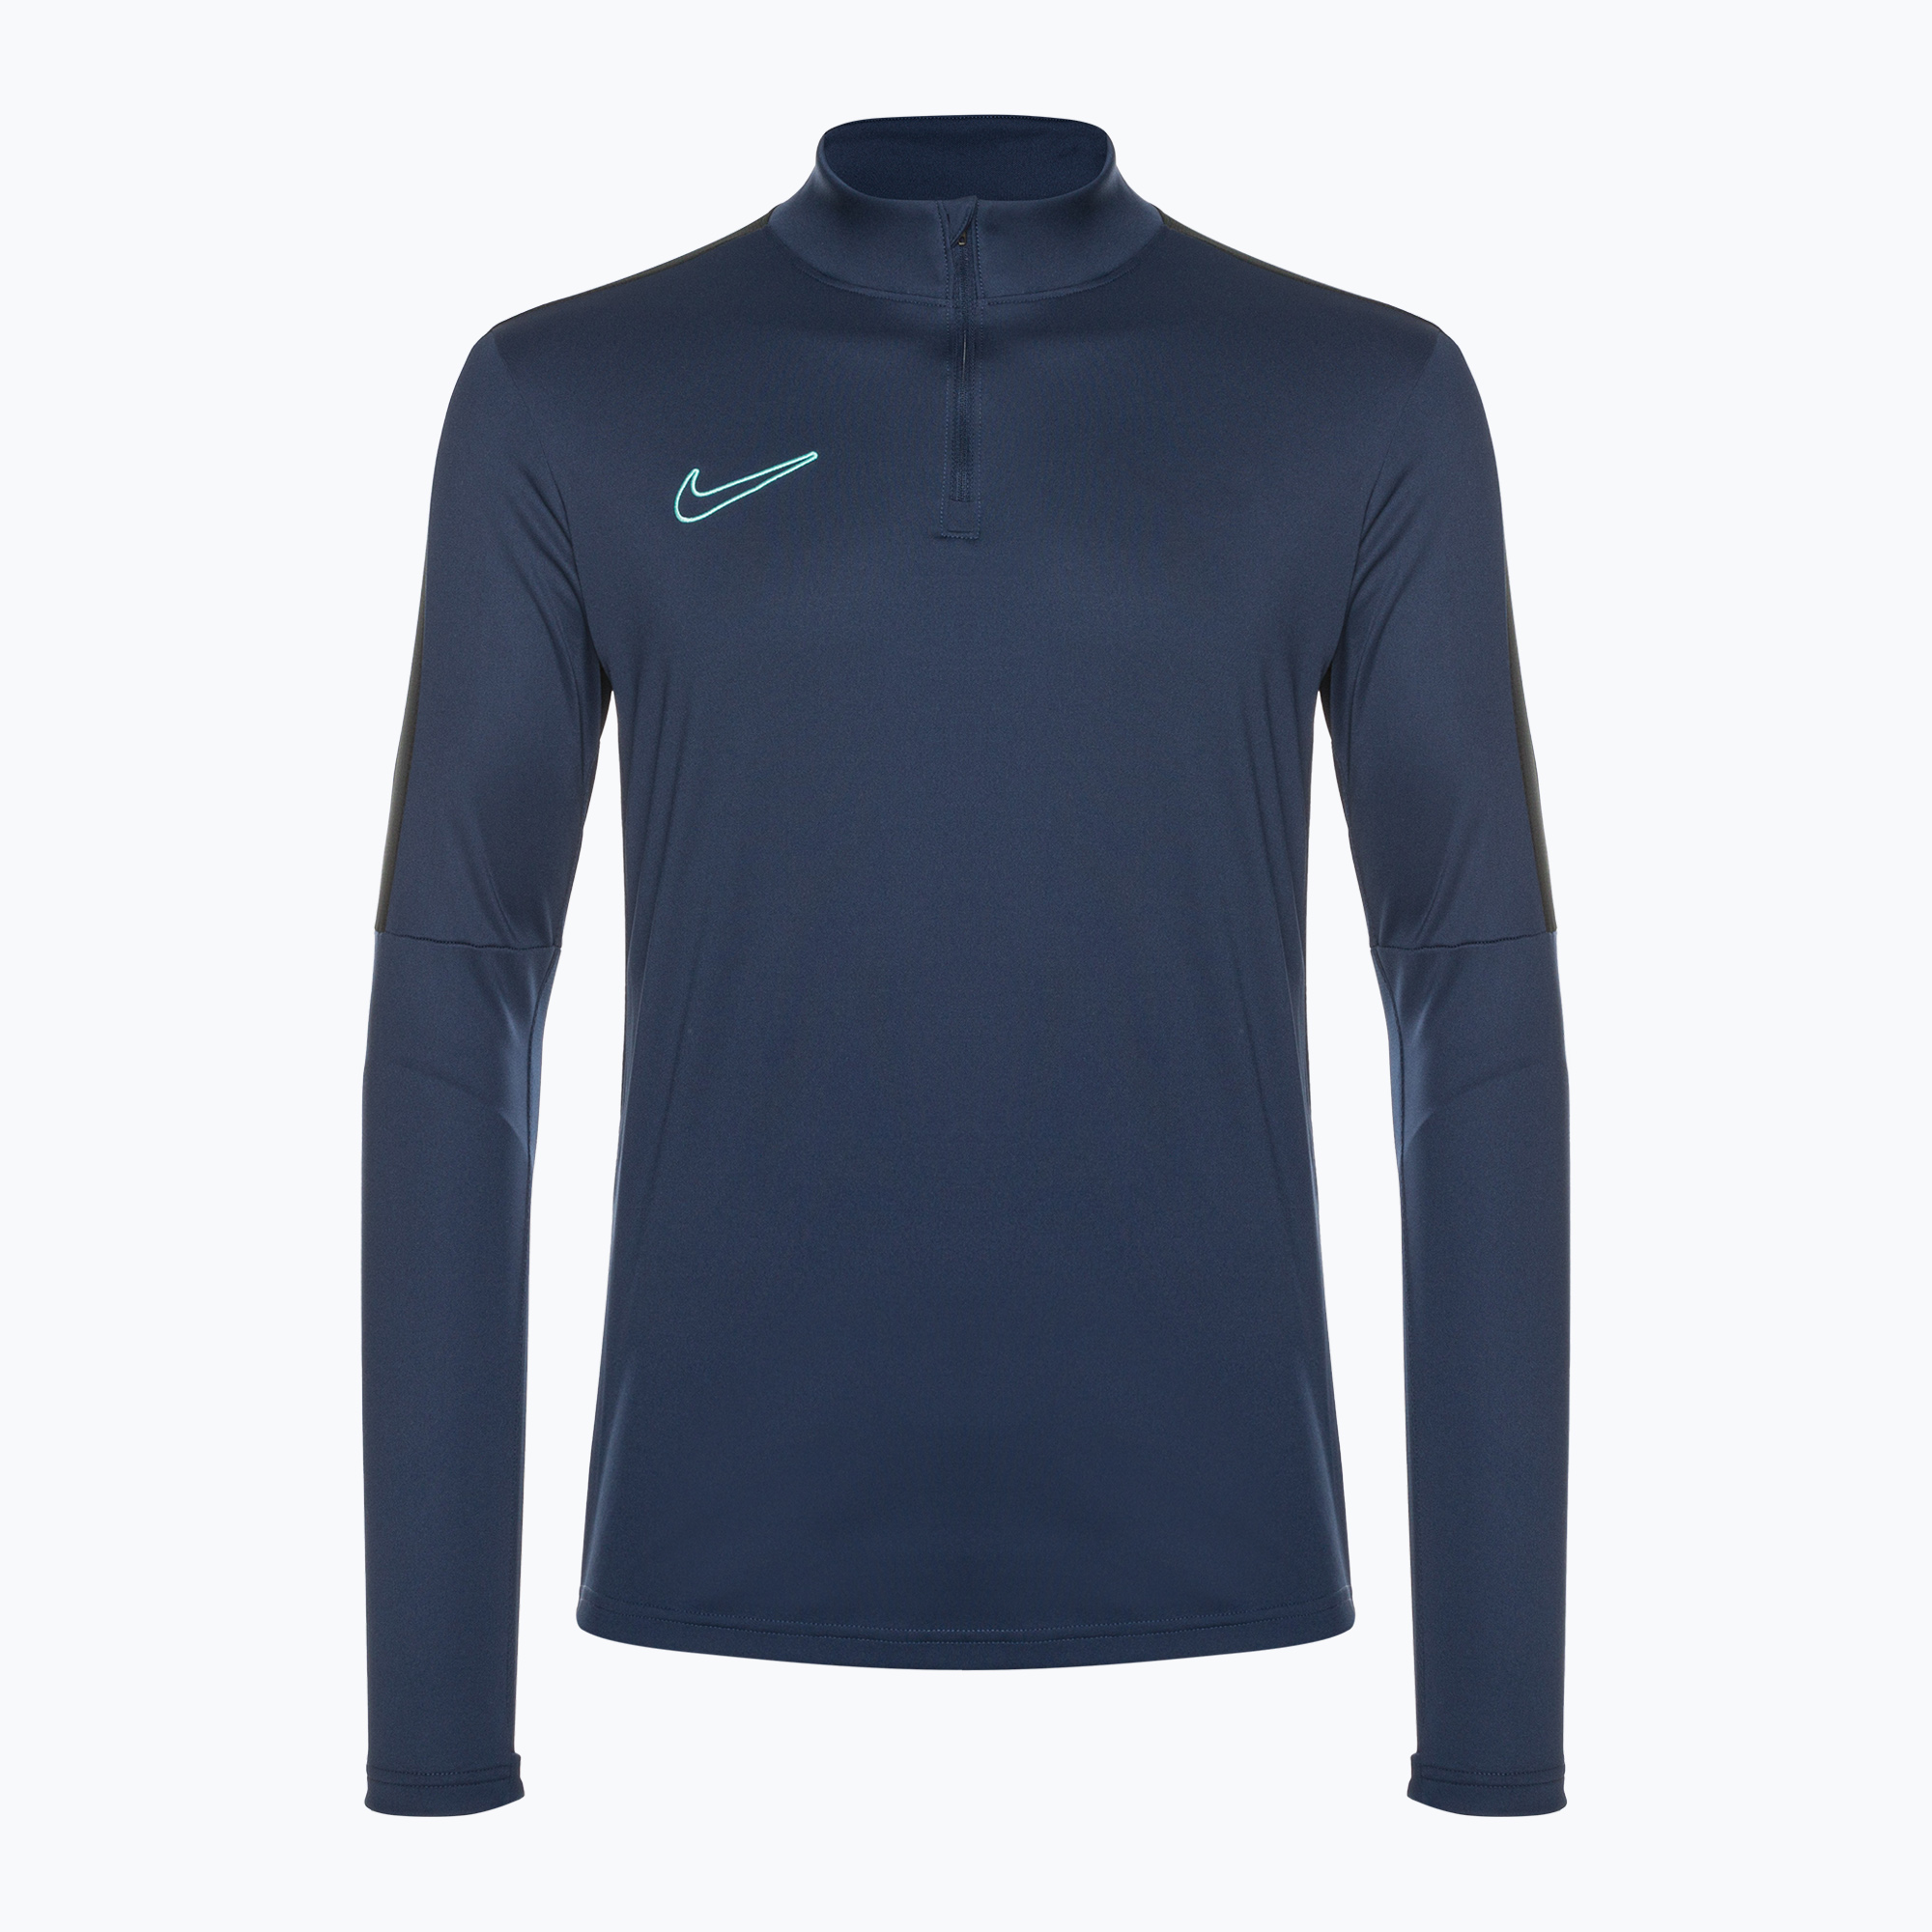 Pánske futbalové tričko s dlhým rukávom Nike Academy Dri-Fit 1/2-Zip midnight navy/black/midnight navy/hyper turquoise